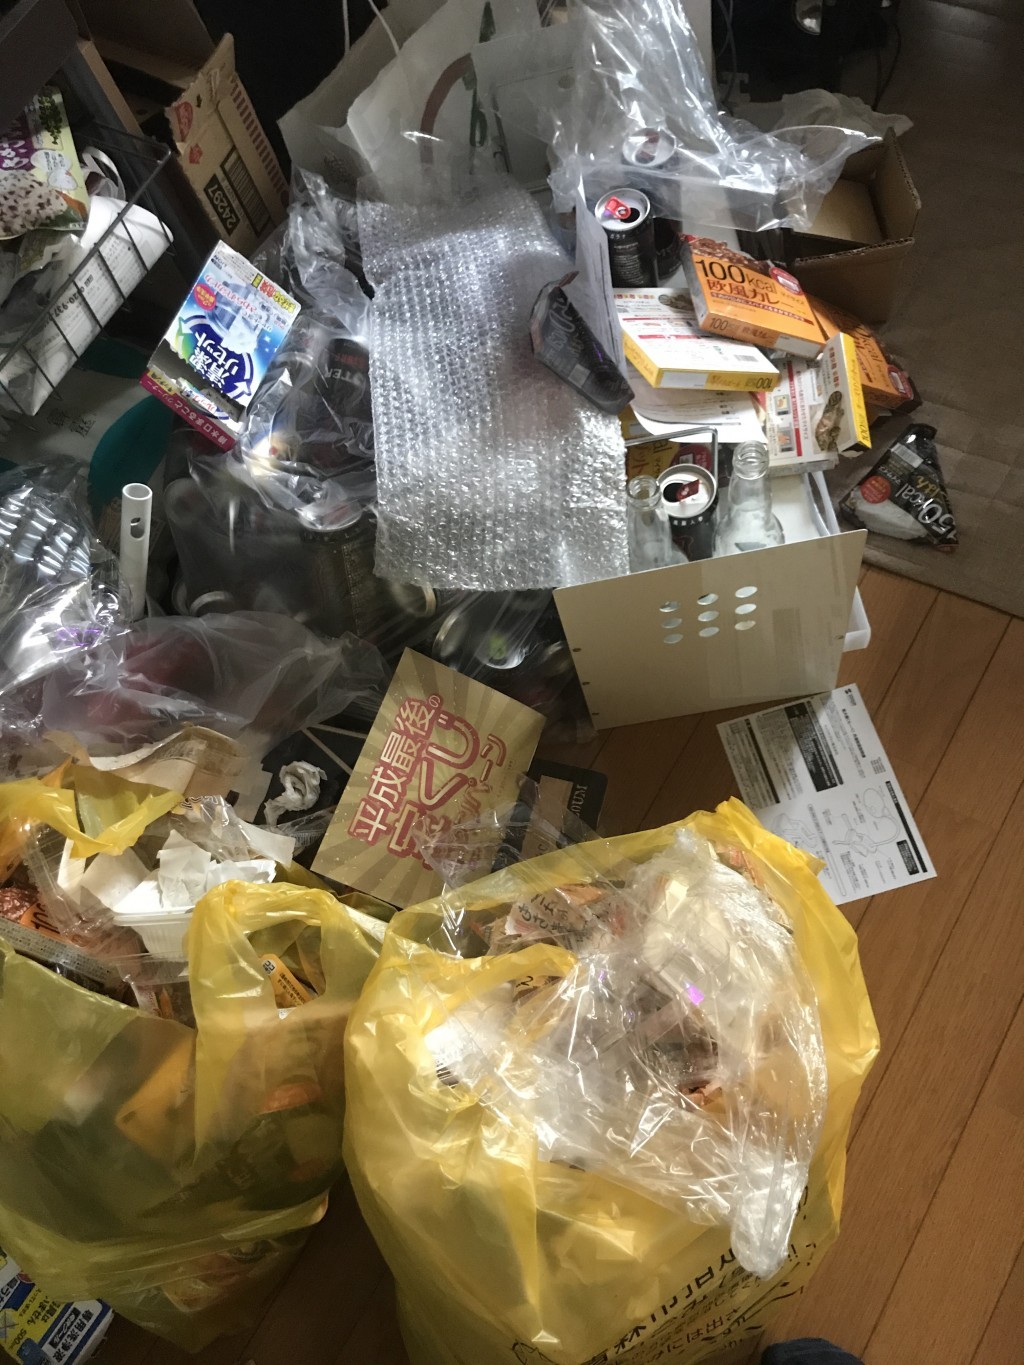 青森市 ダンボール 家庭ごみの回収 ゴミの多さに憂うつだったが 即日対応してもらえて助かったとお喜びいただけました